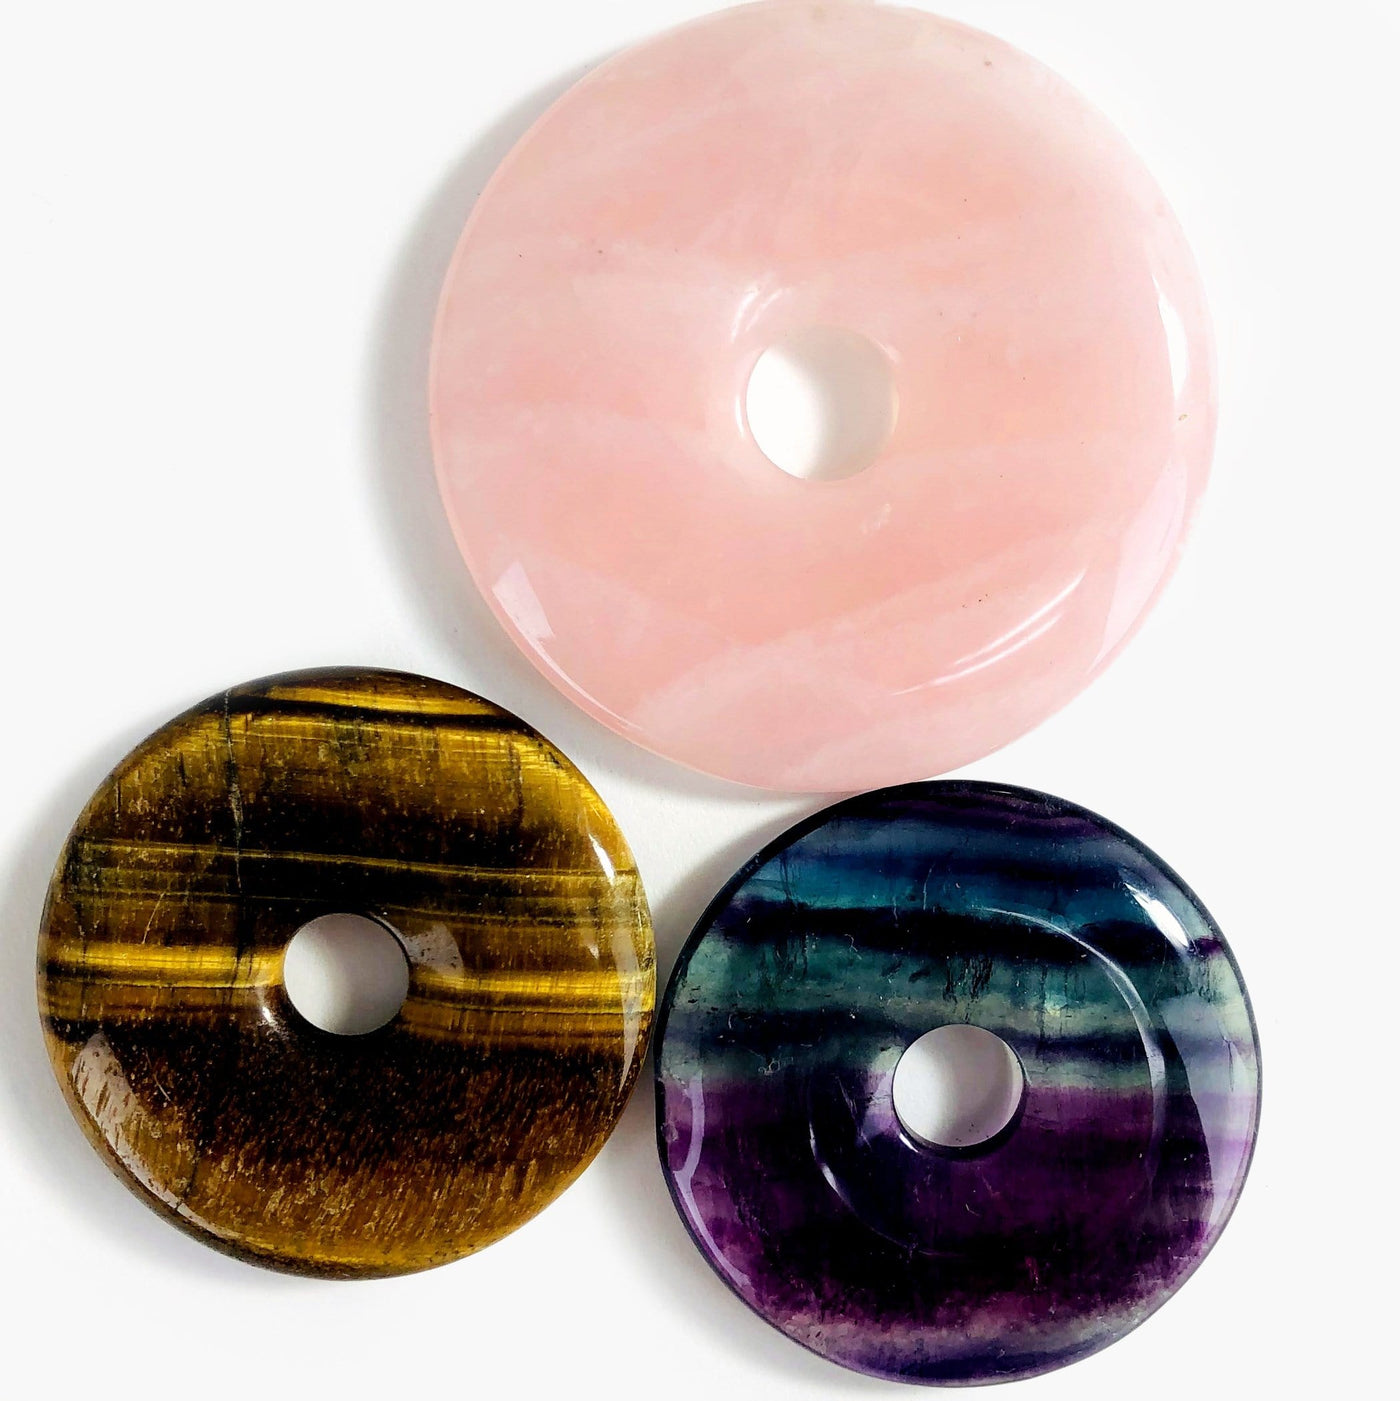 rose quartz, tigers eye, and fluorite donut shaped polished stones on white background